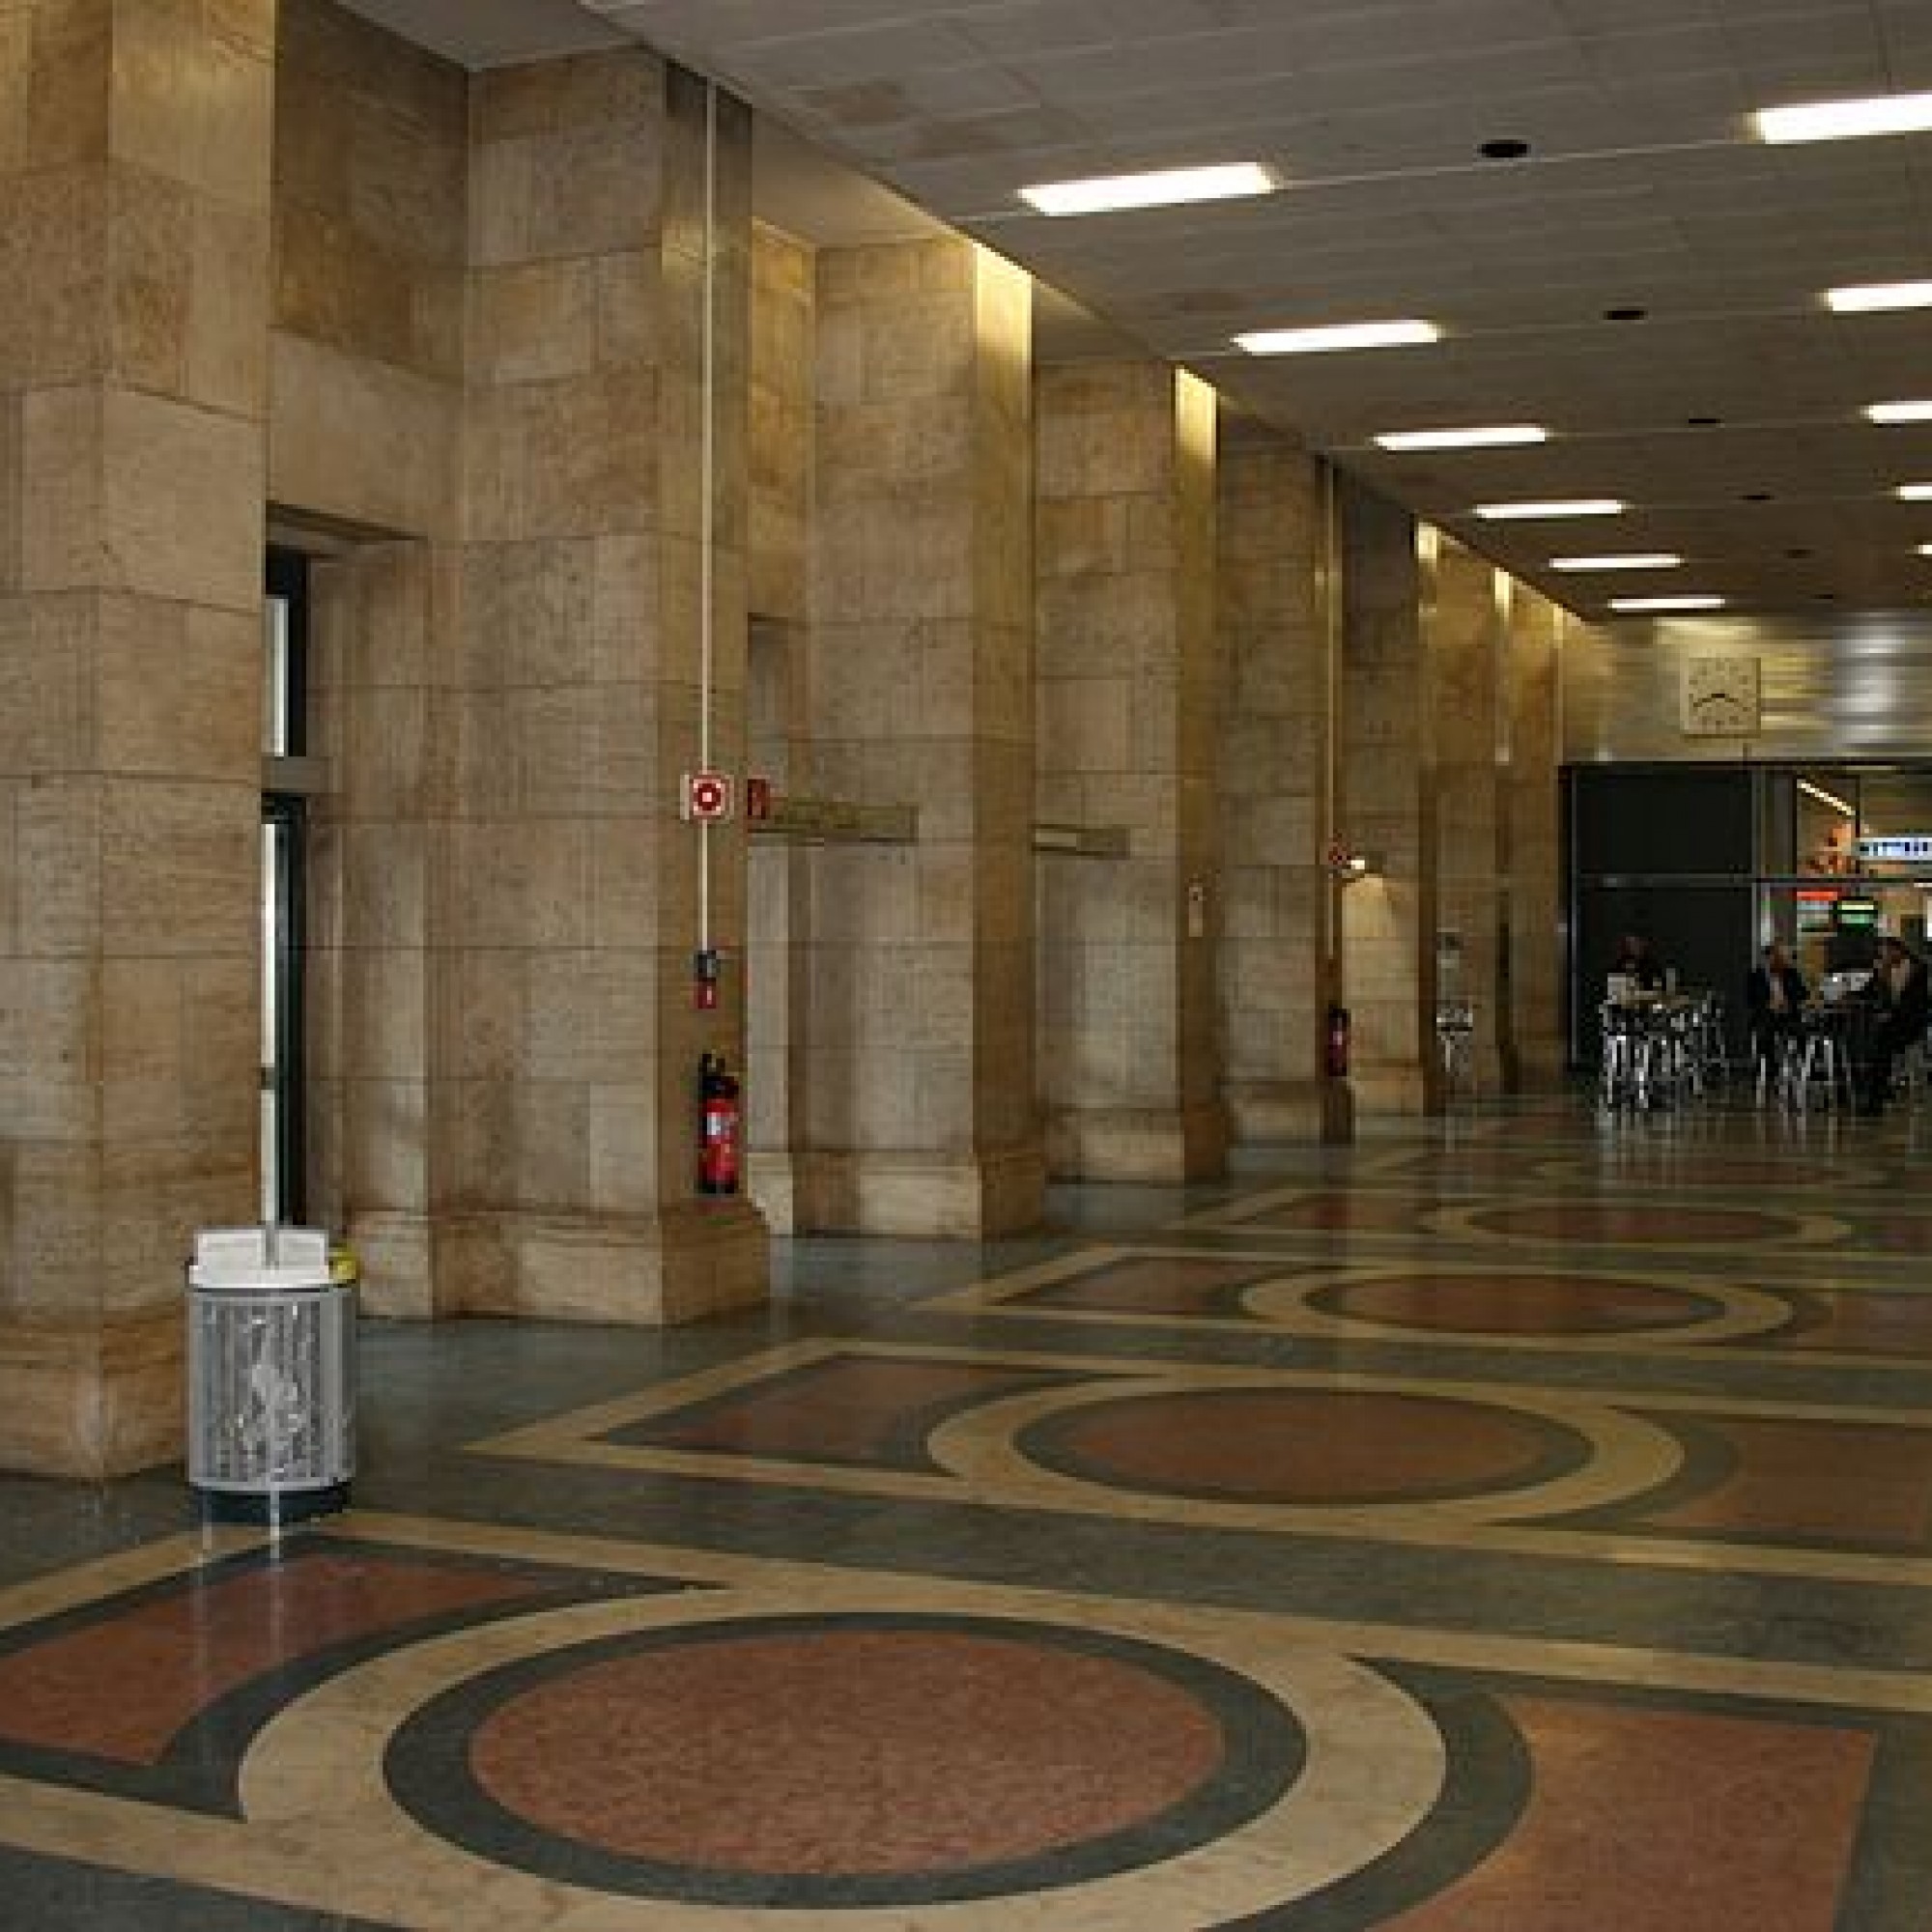 Eingangsbereich Flughafen Tempelhof vor der Abfertigungshalle, 2008 (Bild: Sir James, wikimedia, CC)